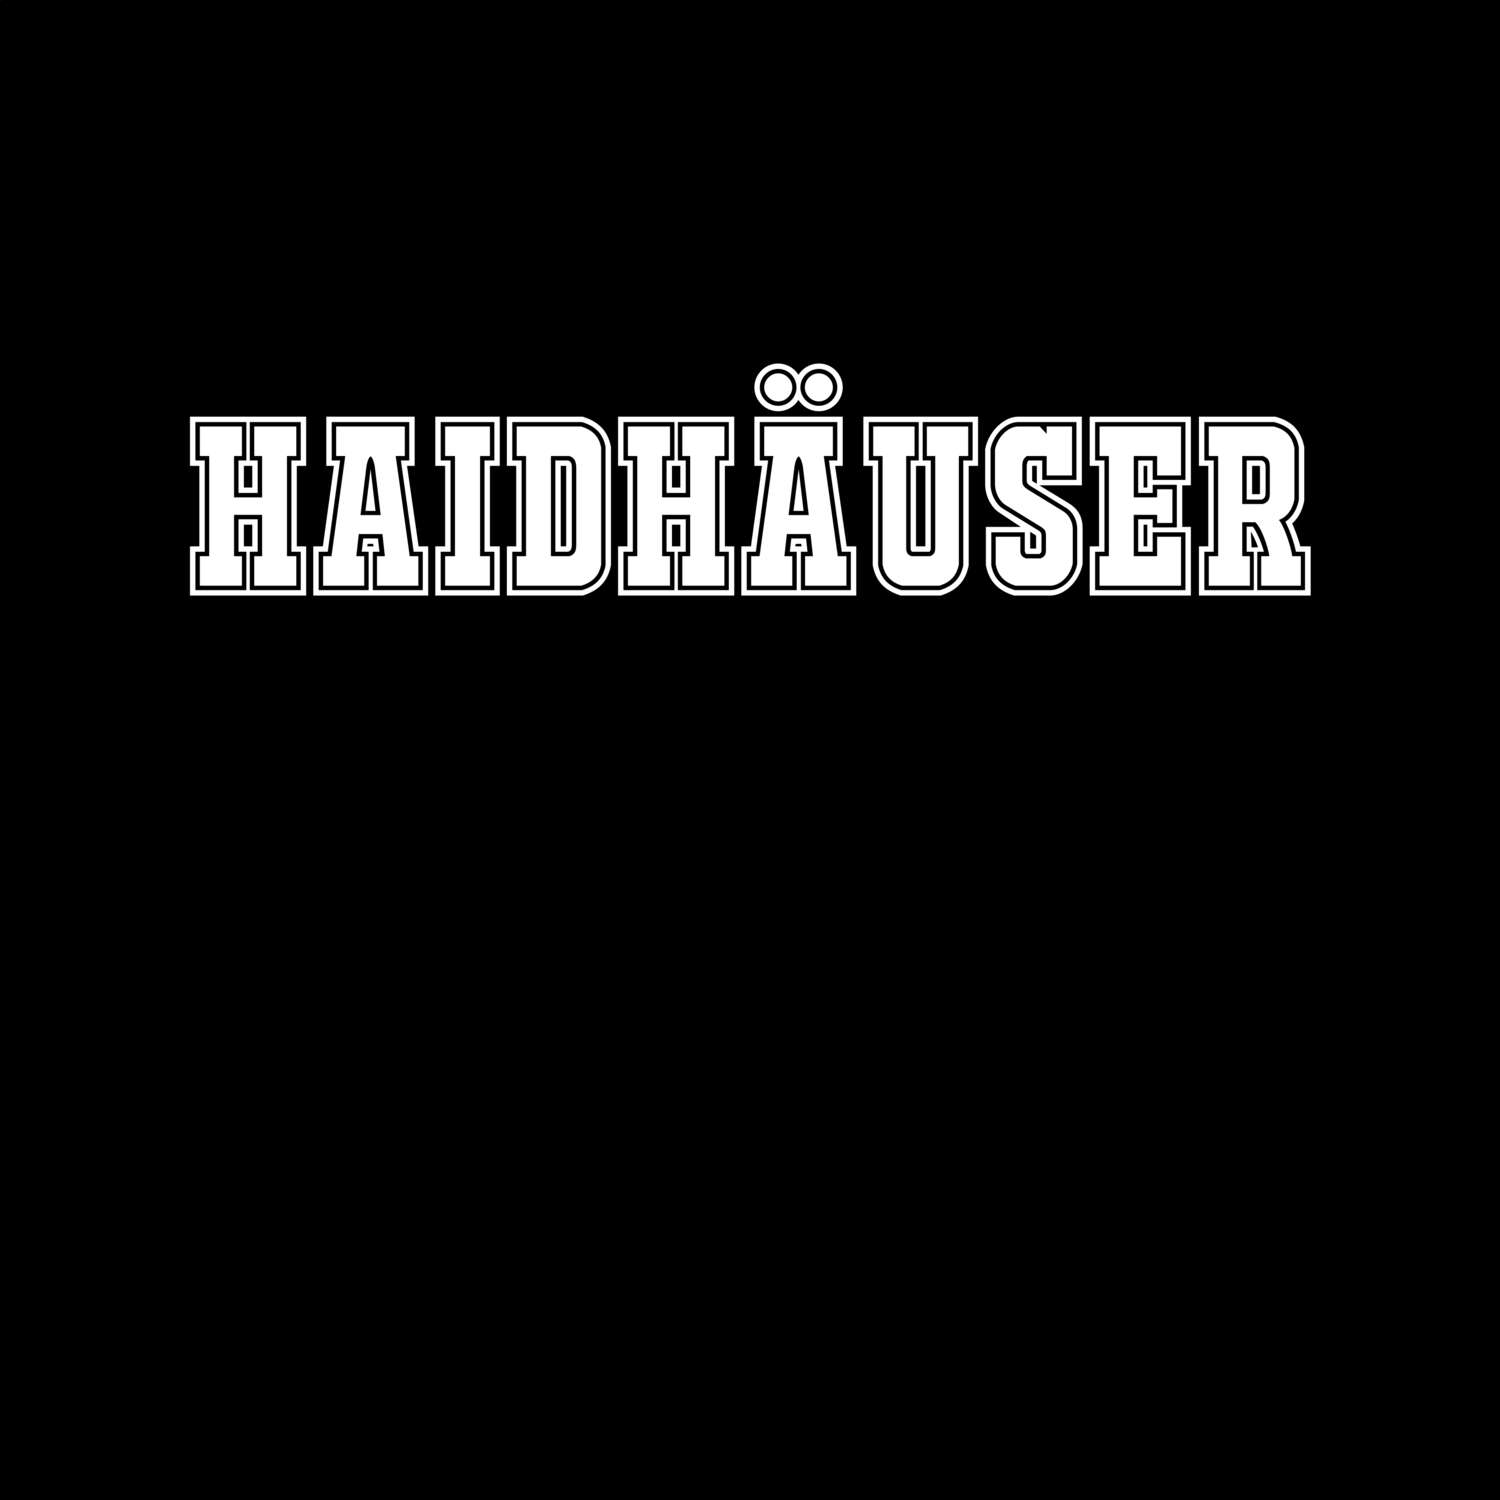 Haidhäuser T-Shirt »Classic«